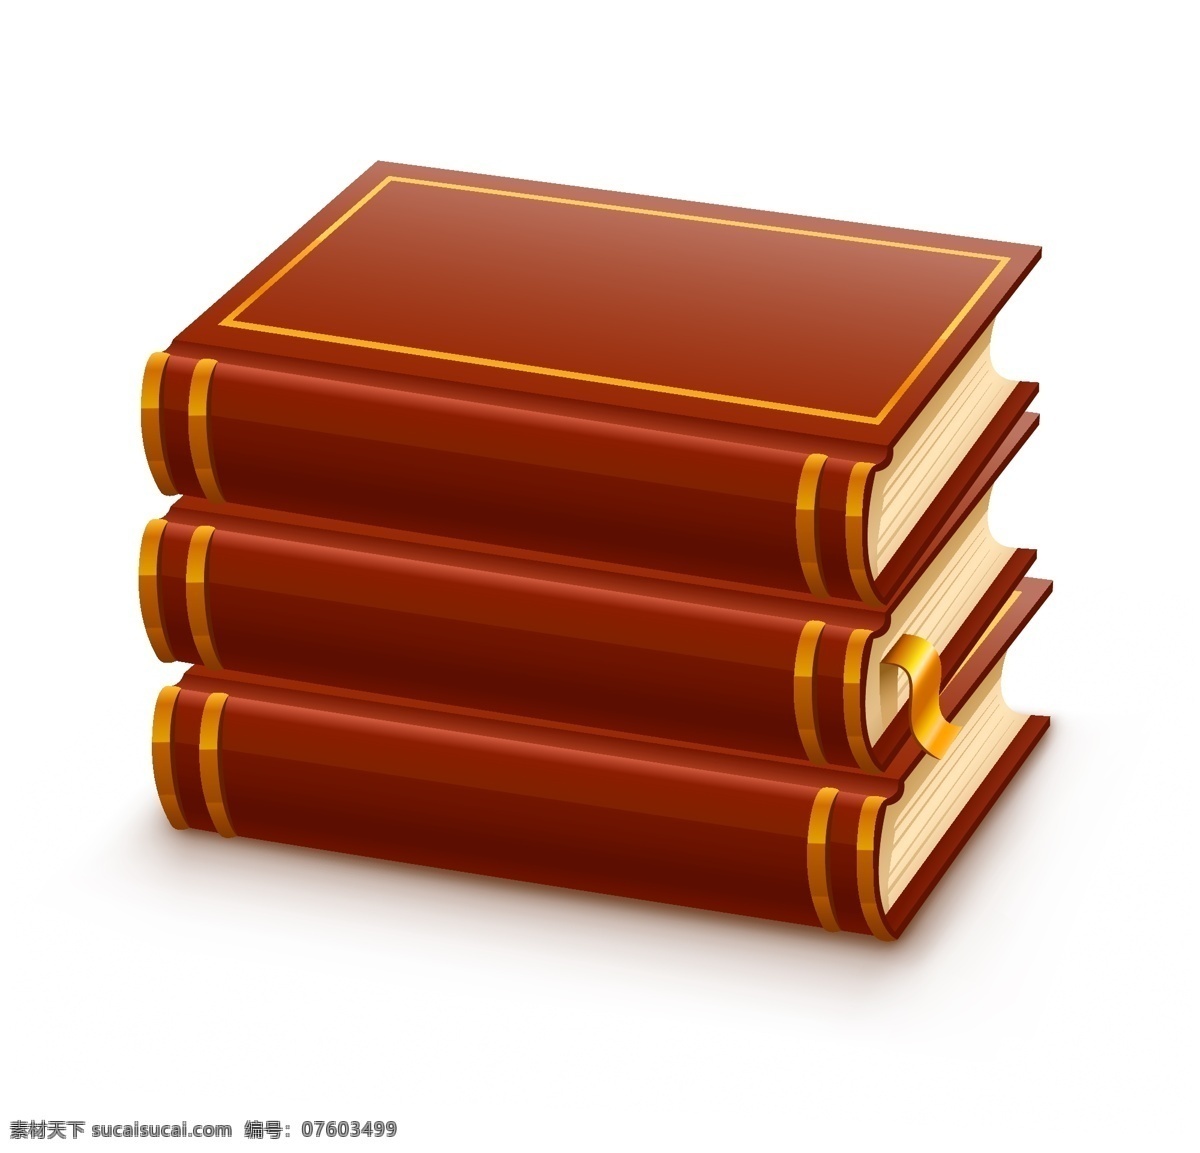 图书 载体 材料 品种 博士帽 尺子 空白 苹果 铅笔 书籍 文具 学习 古籍 多叶的绿色 打开书 矢量图 日常生活